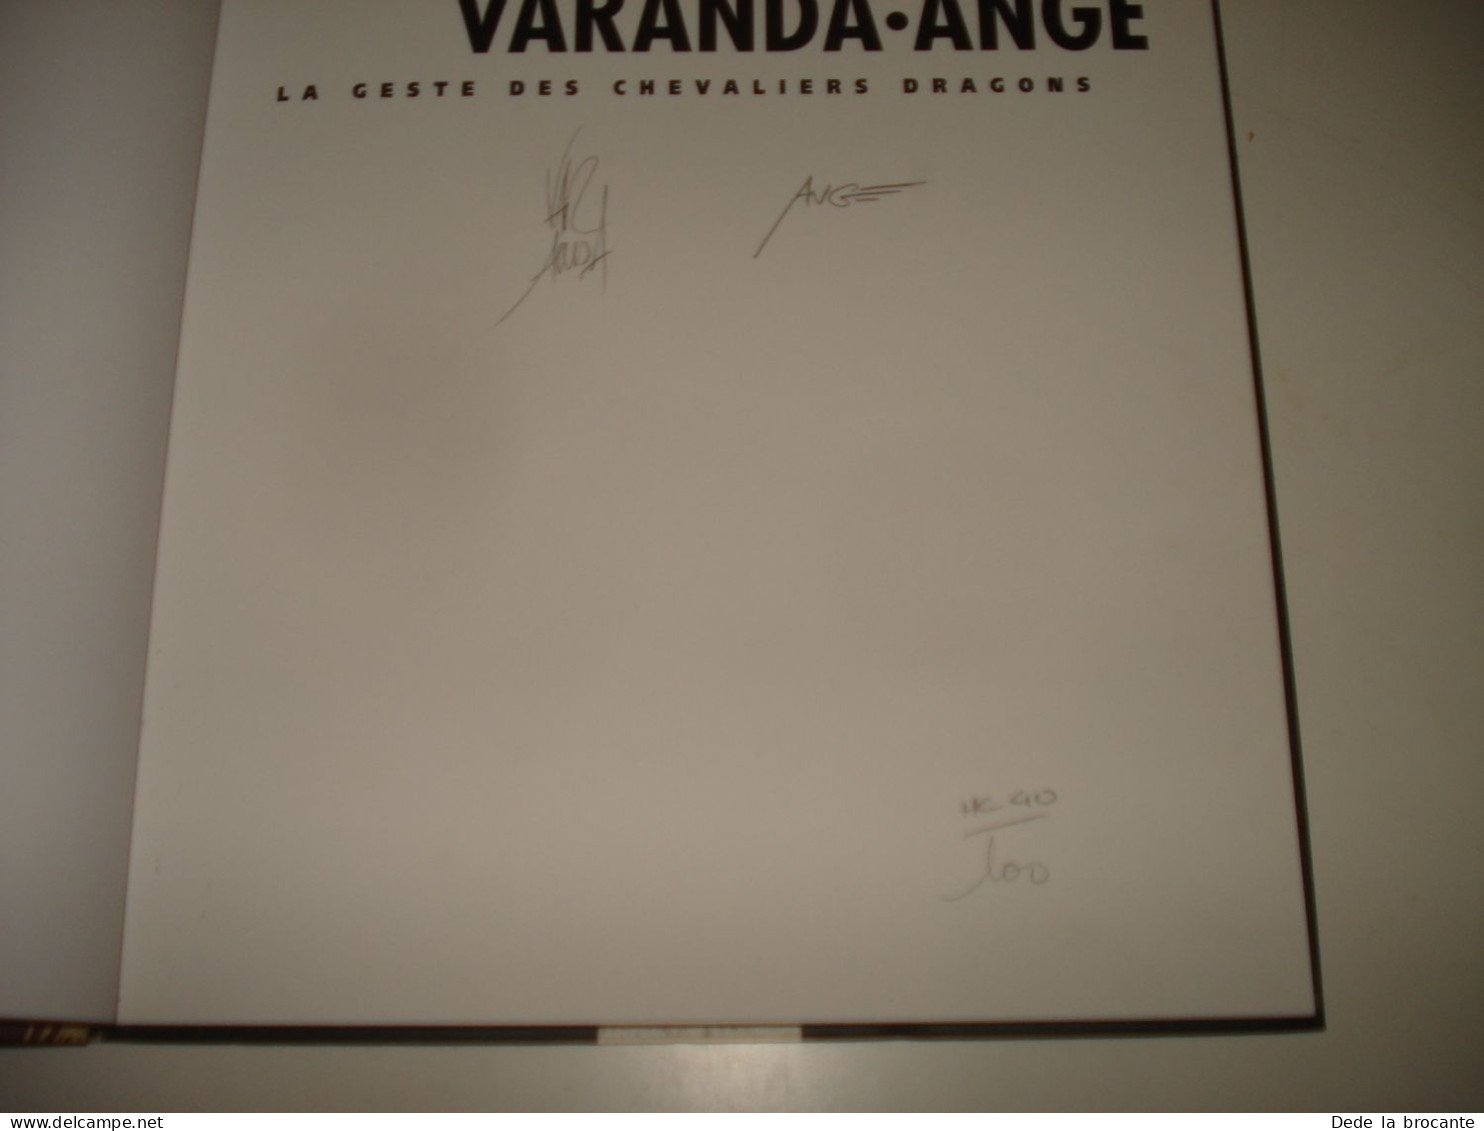 C54 / Le Geste Des Chevaliers Dragons - Varanda Ange - Numéroté Et Signé - 1998 - First Copies